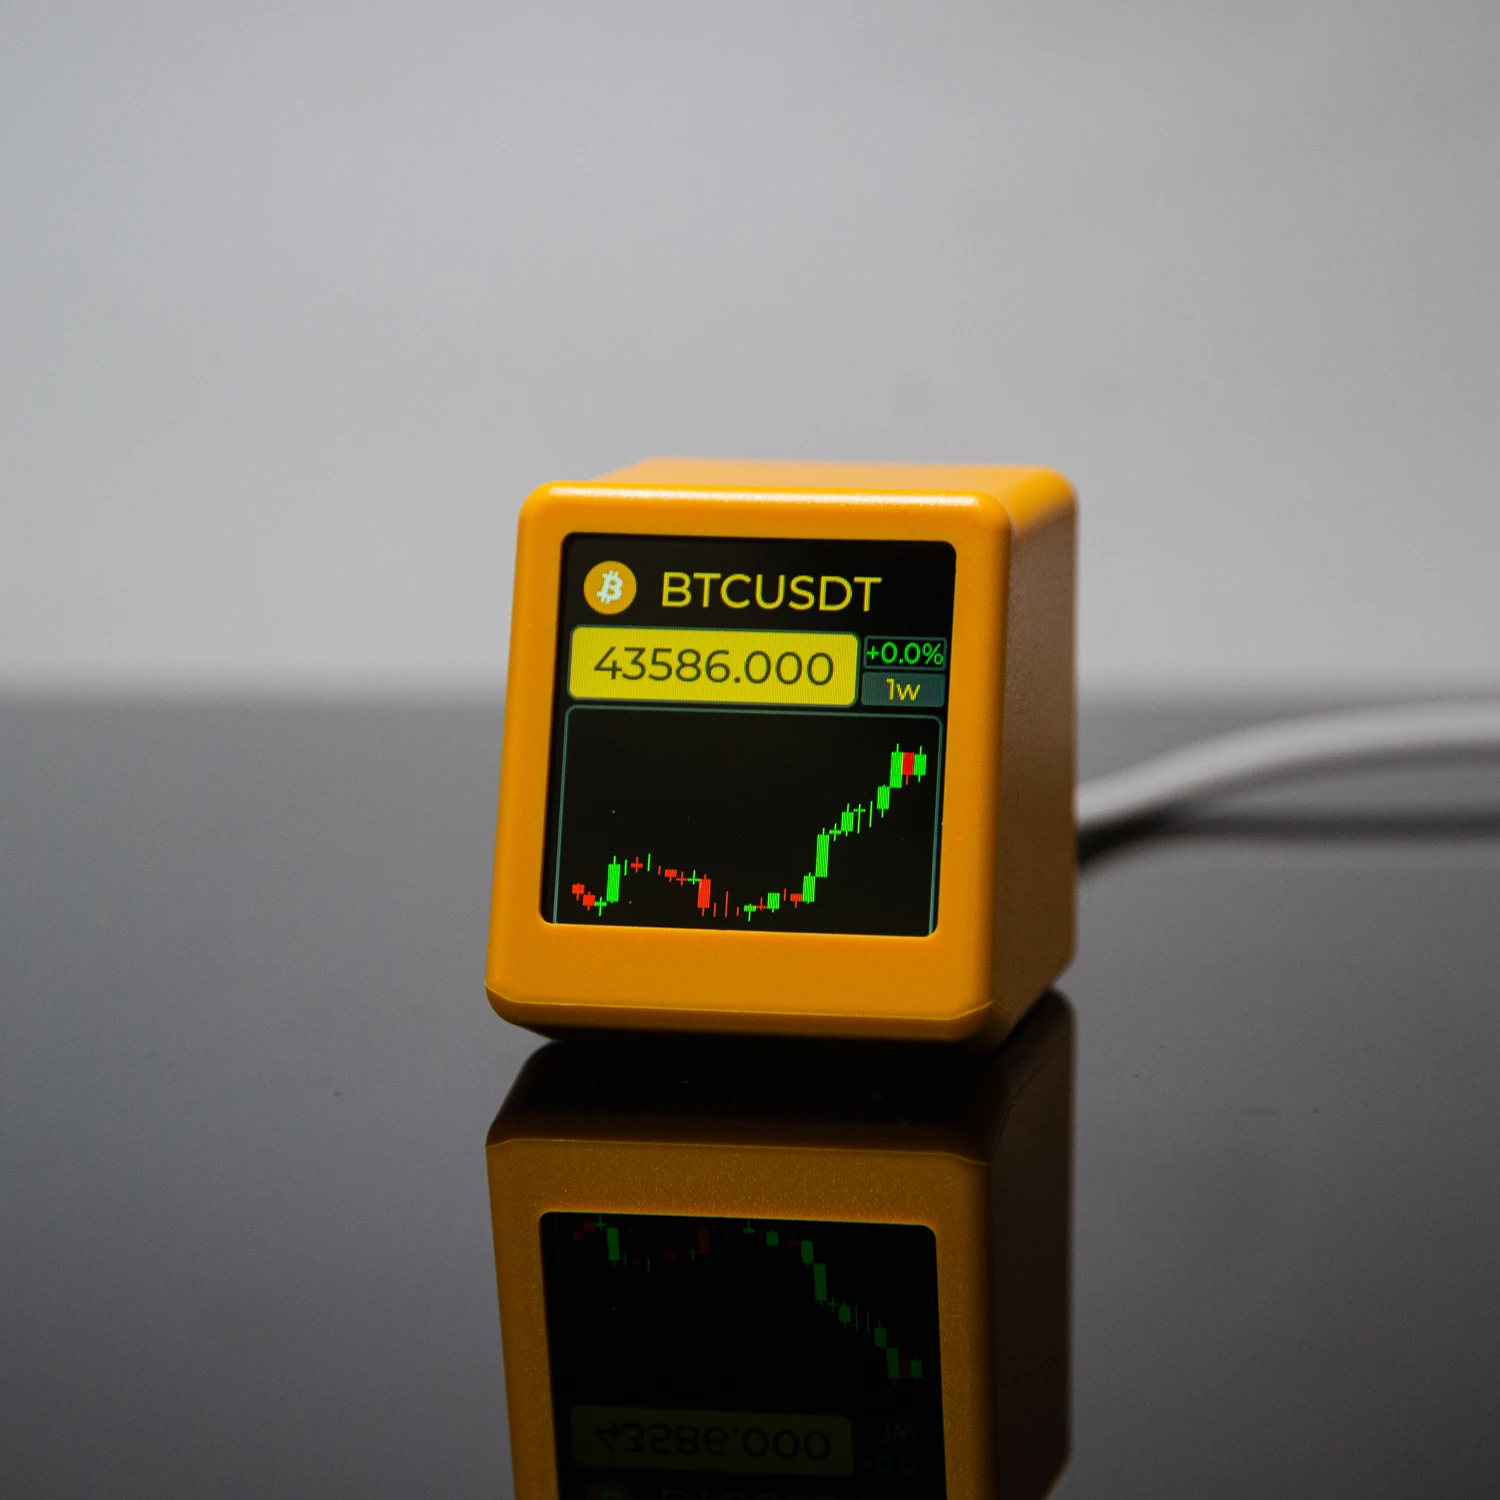 Geekmagic nerdminer bitcoin cryptocurrency, zásoby, futures, valuta výměna hodnotit, cena stopař ticker, čas hodiny počasí displej